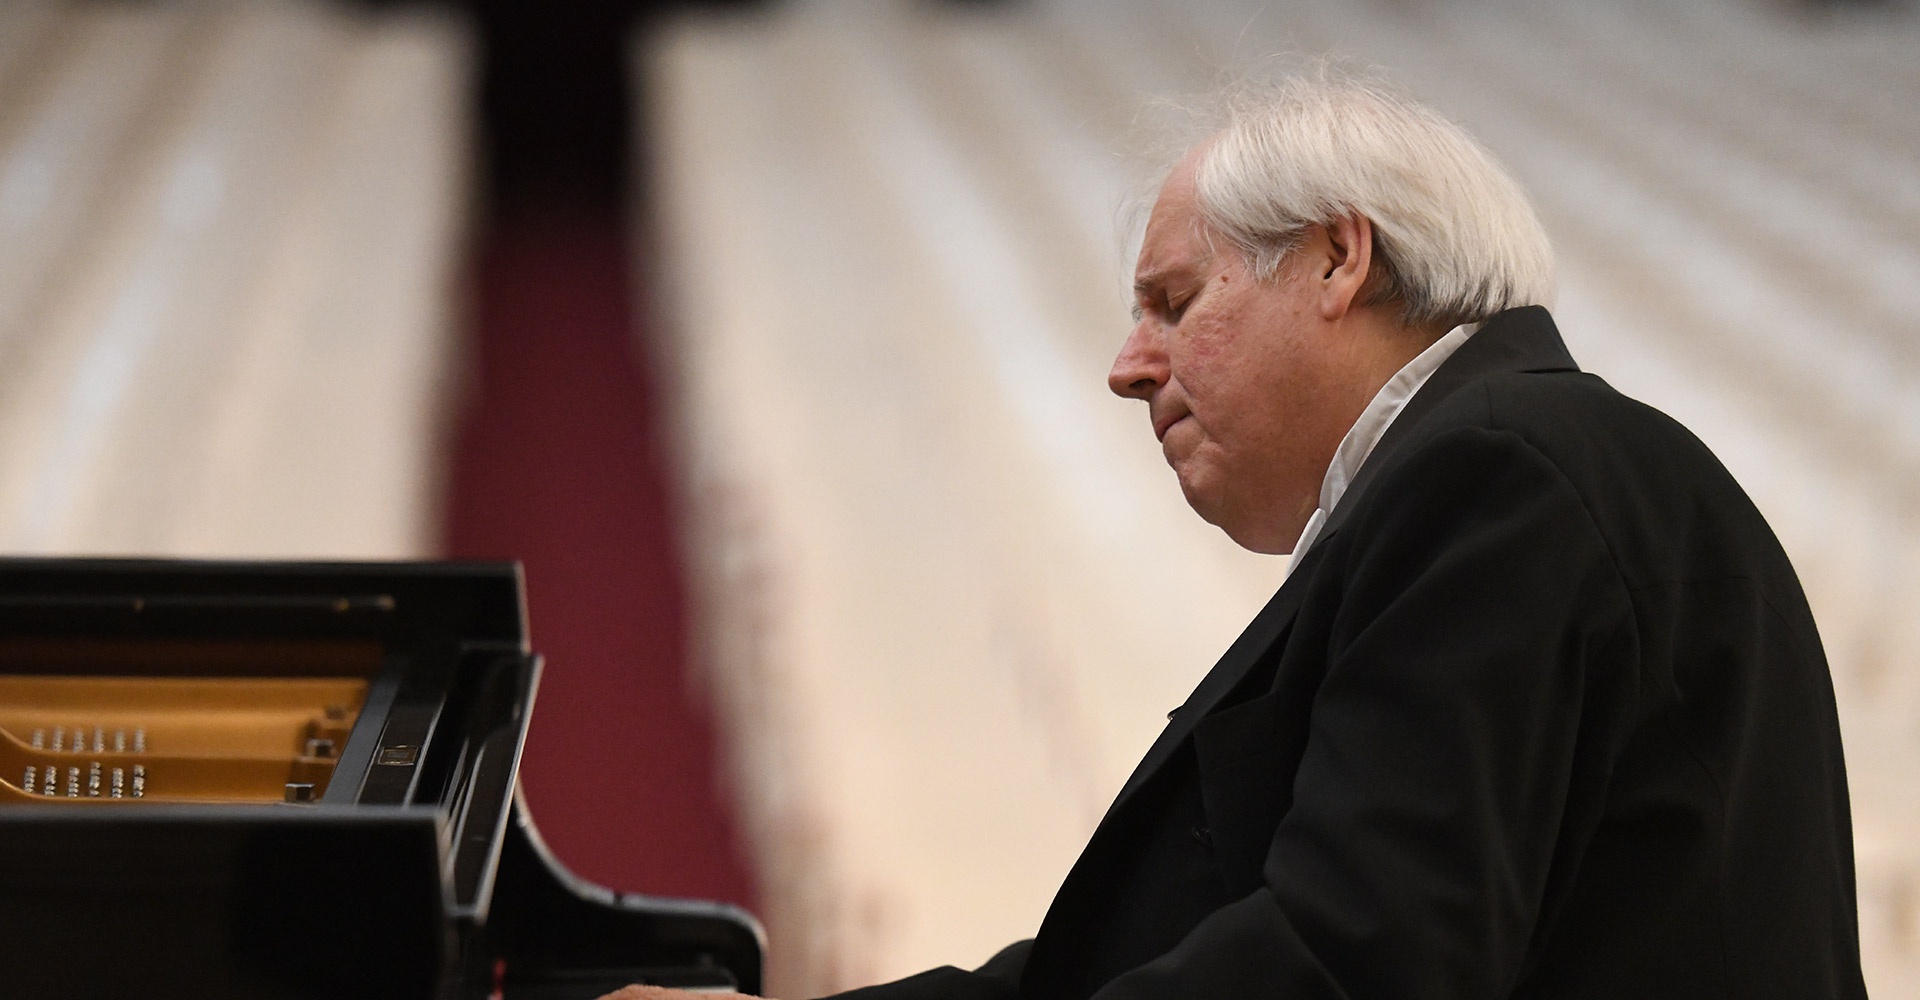 Grigori Sokolov au piano